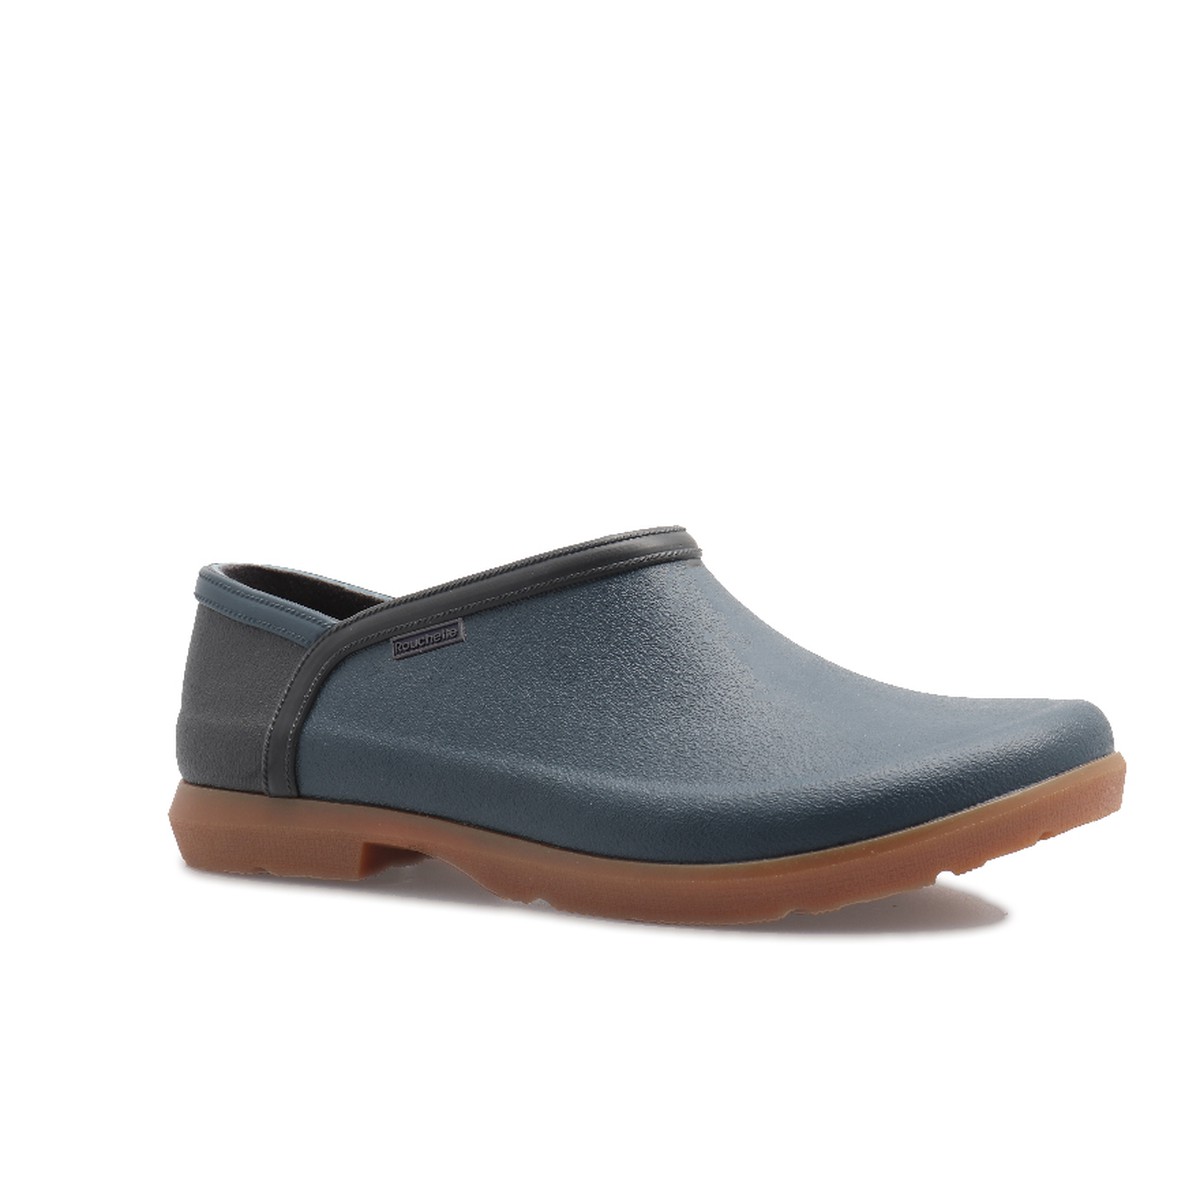 Rouchette Origin Chaussures Origin Bleu Canard Bleu canard Taille 41